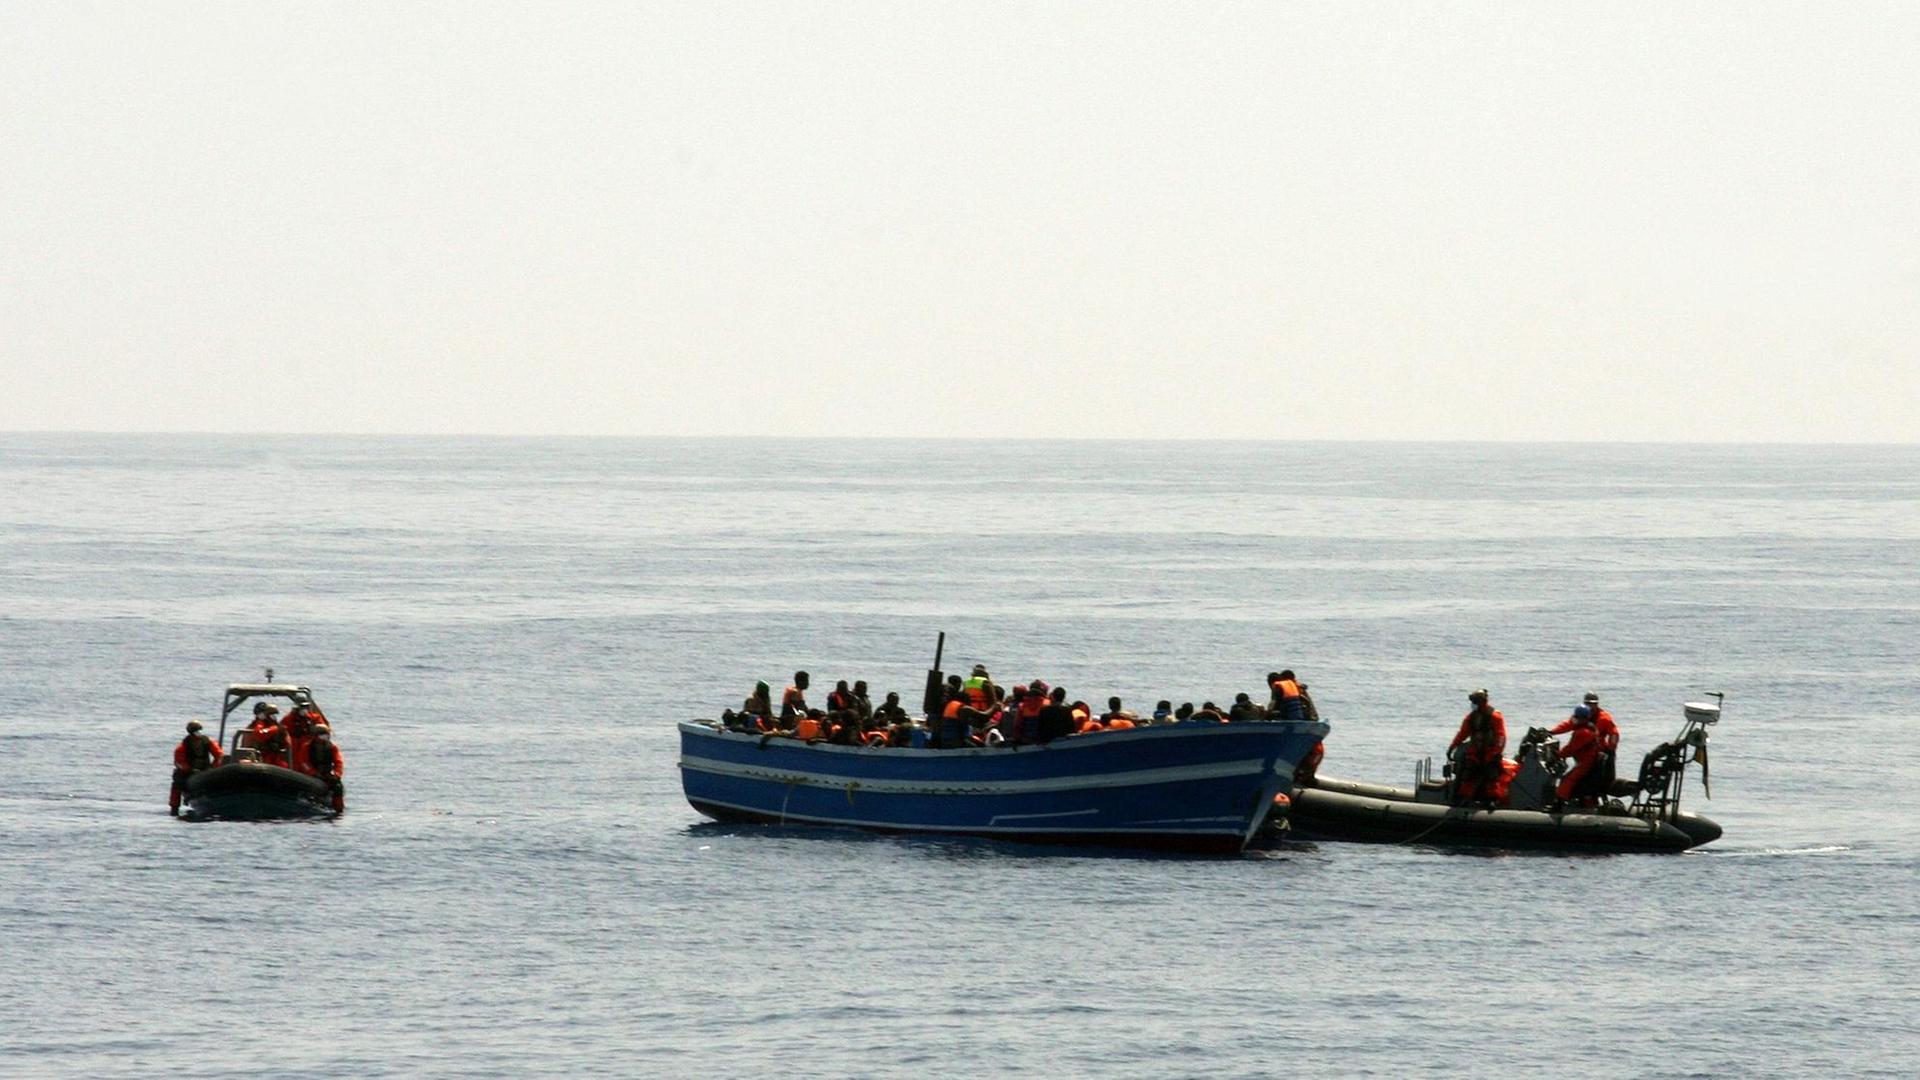 Bundeswehrsoldaten bergen von zwei kleinen Motorbooten aus am 08.05.2015 im Mittelmeer schiffbrüchige Flüchtlinge. In der Mitte ist das Holzboot zu sehen, das zu kentern droht. 